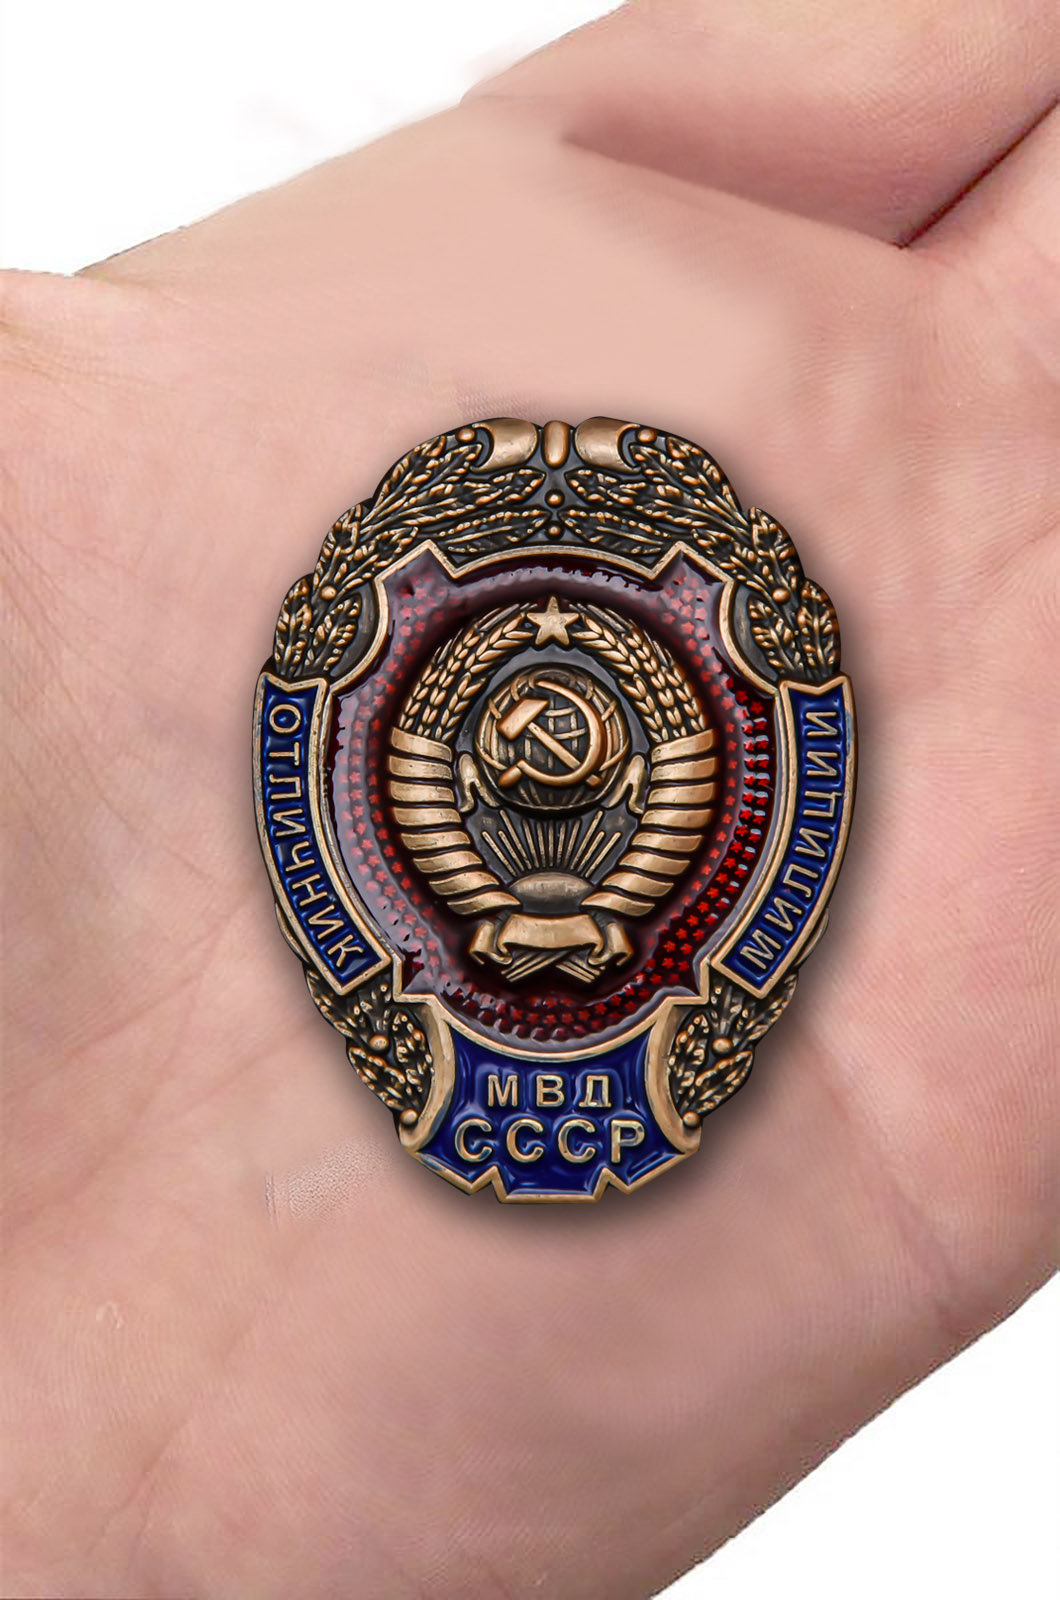 Наградной знак "Отличник милиции МВД СССР" 